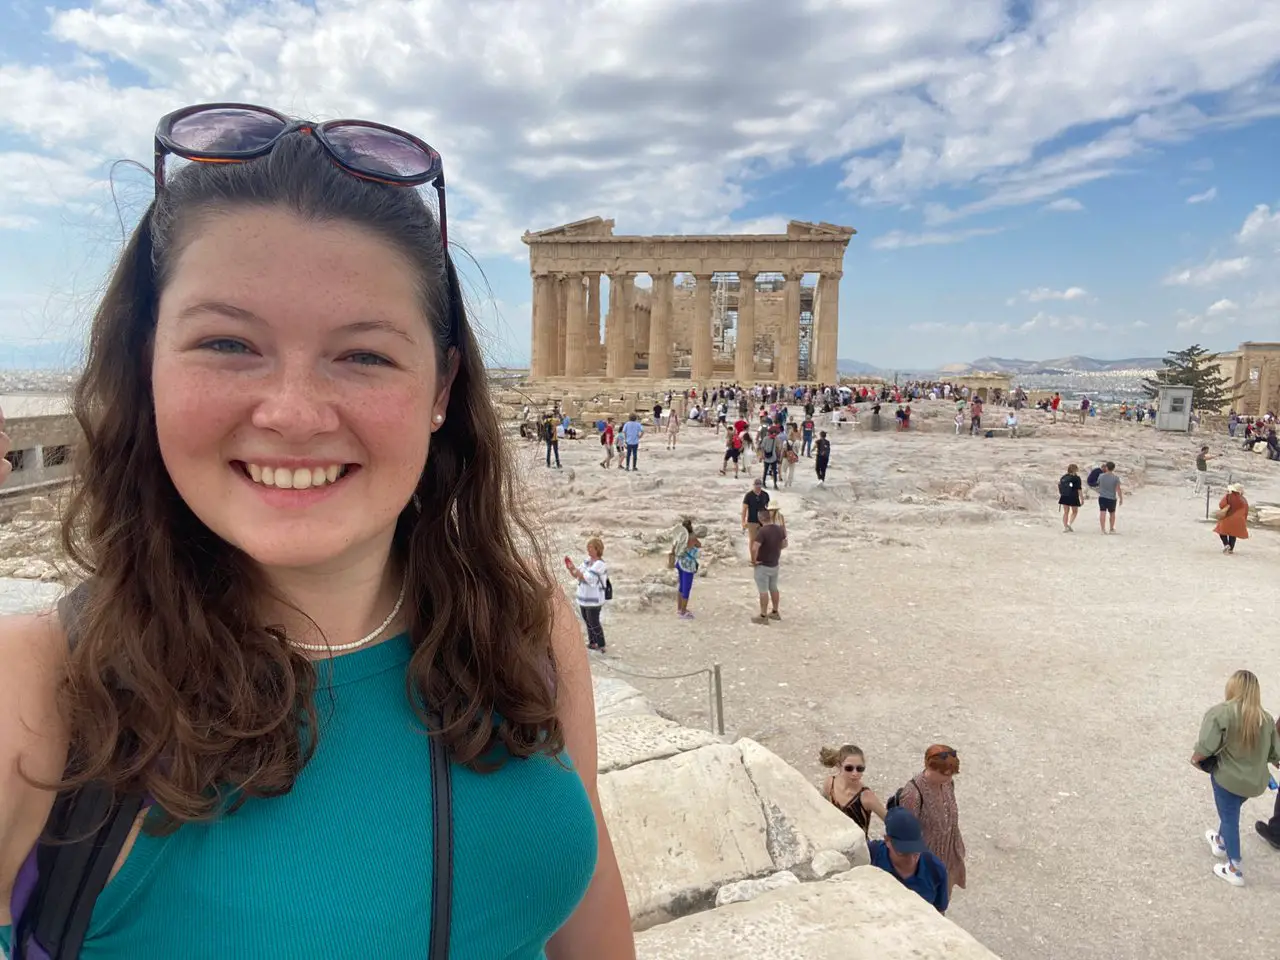 Ella at the Acropolis in Greece